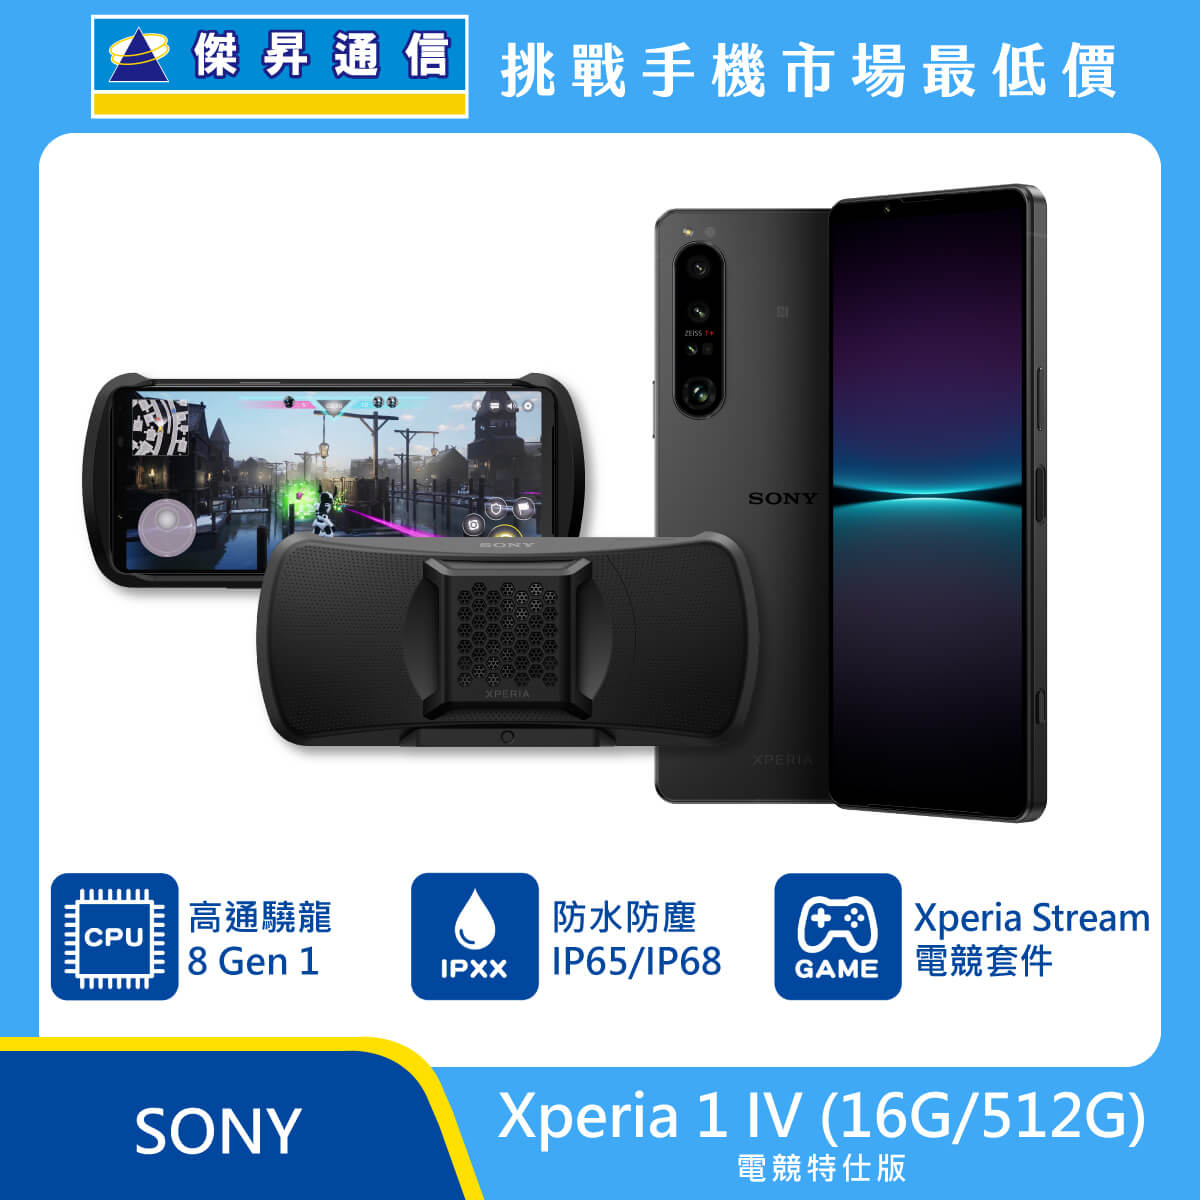 Sony Xperia 1 IV 電競特仕版 (16G/512G)